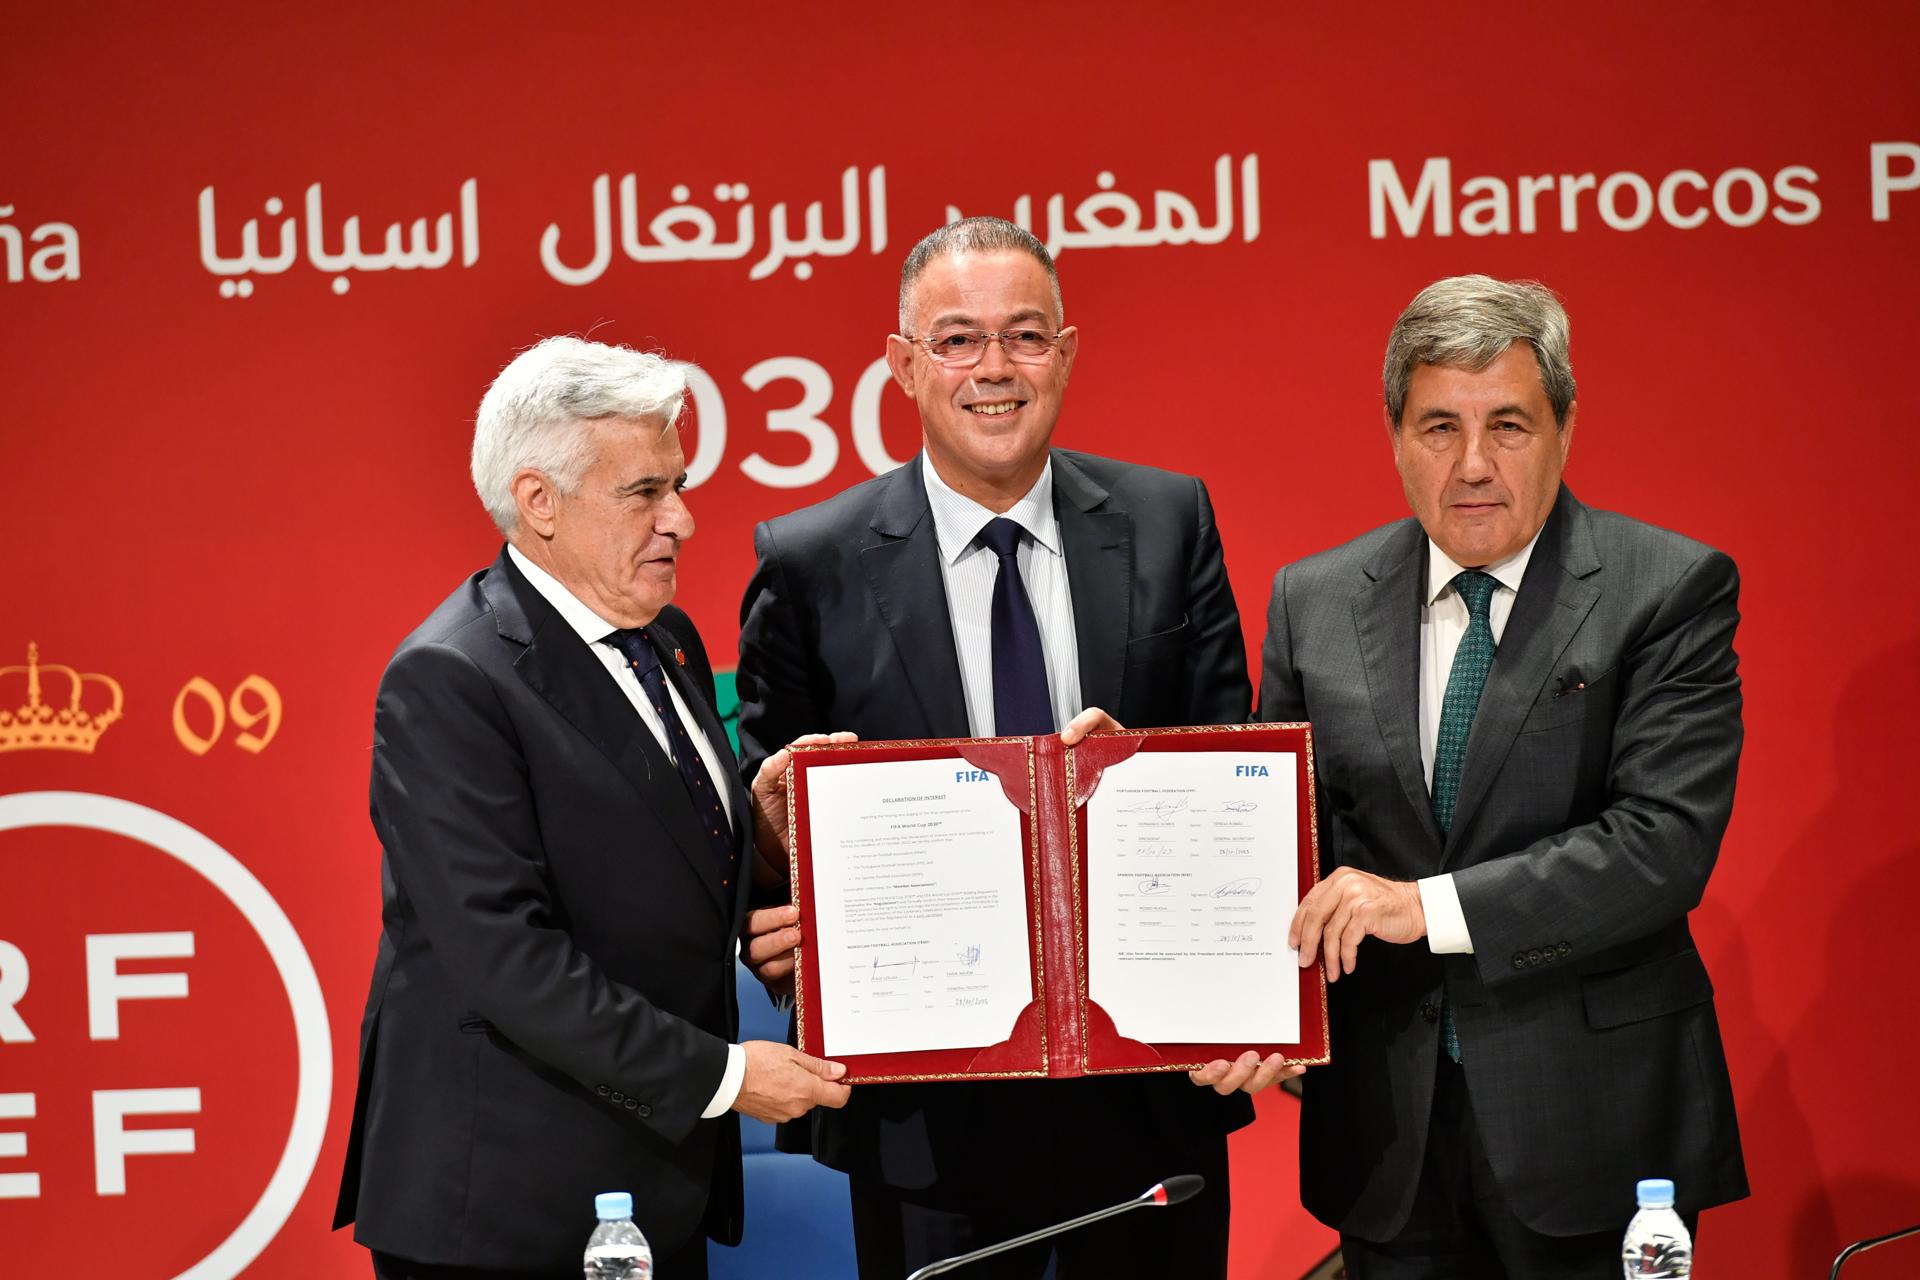 España, Marruecos y Portugal presentaron en Rabat la candidatura "de la paz"